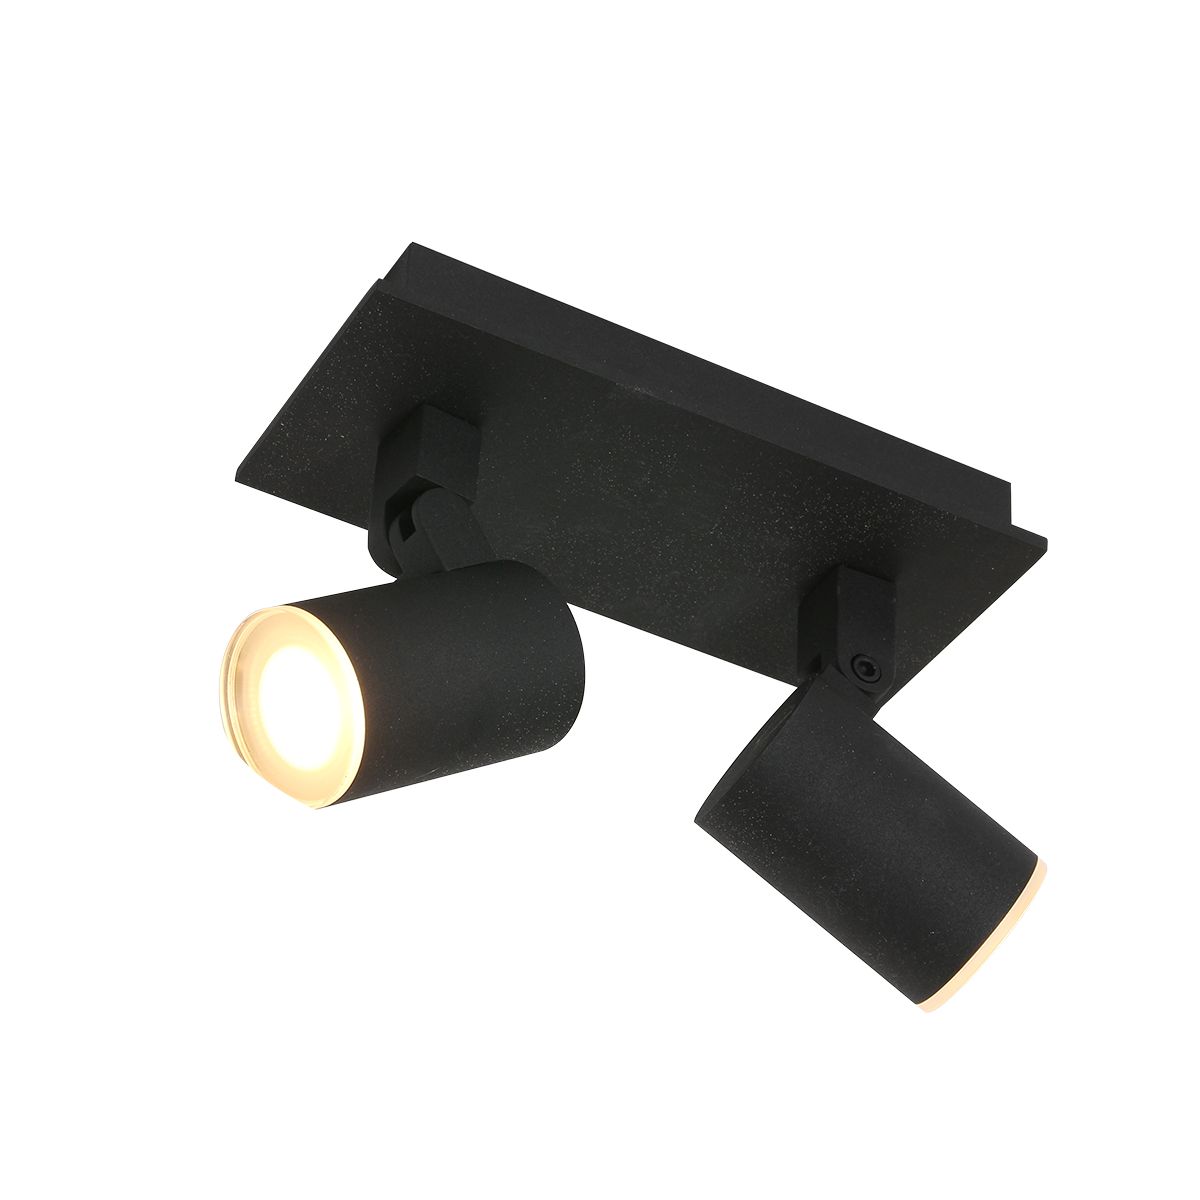 Noir - Spotlampe i sort metal, vælg mellem 3 størrelser 2 skærme